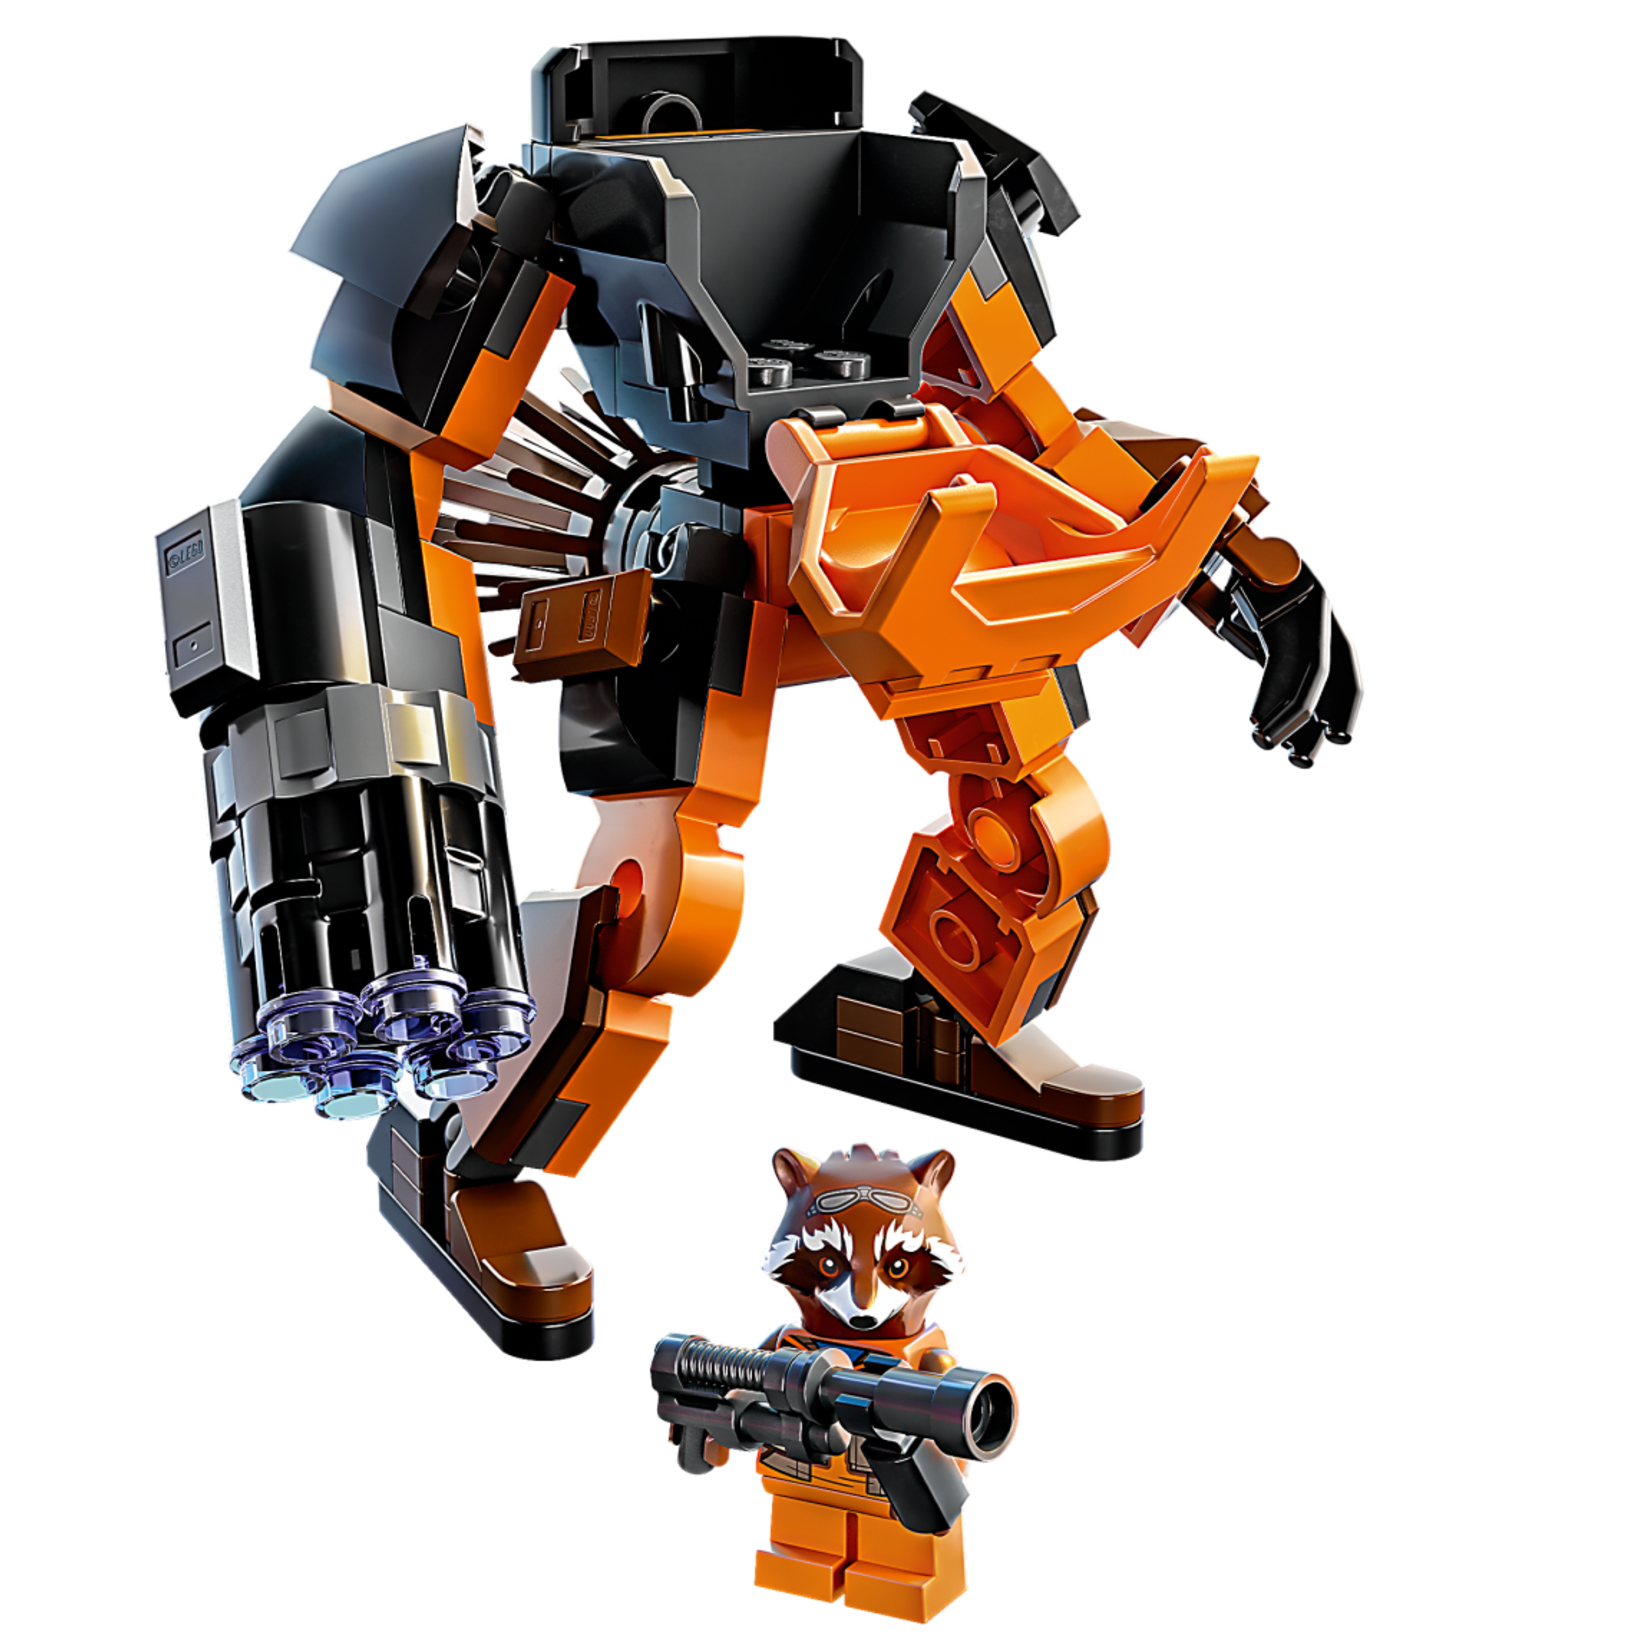 Lego Lego 76243 Marvel - L'armure robot de Rocket